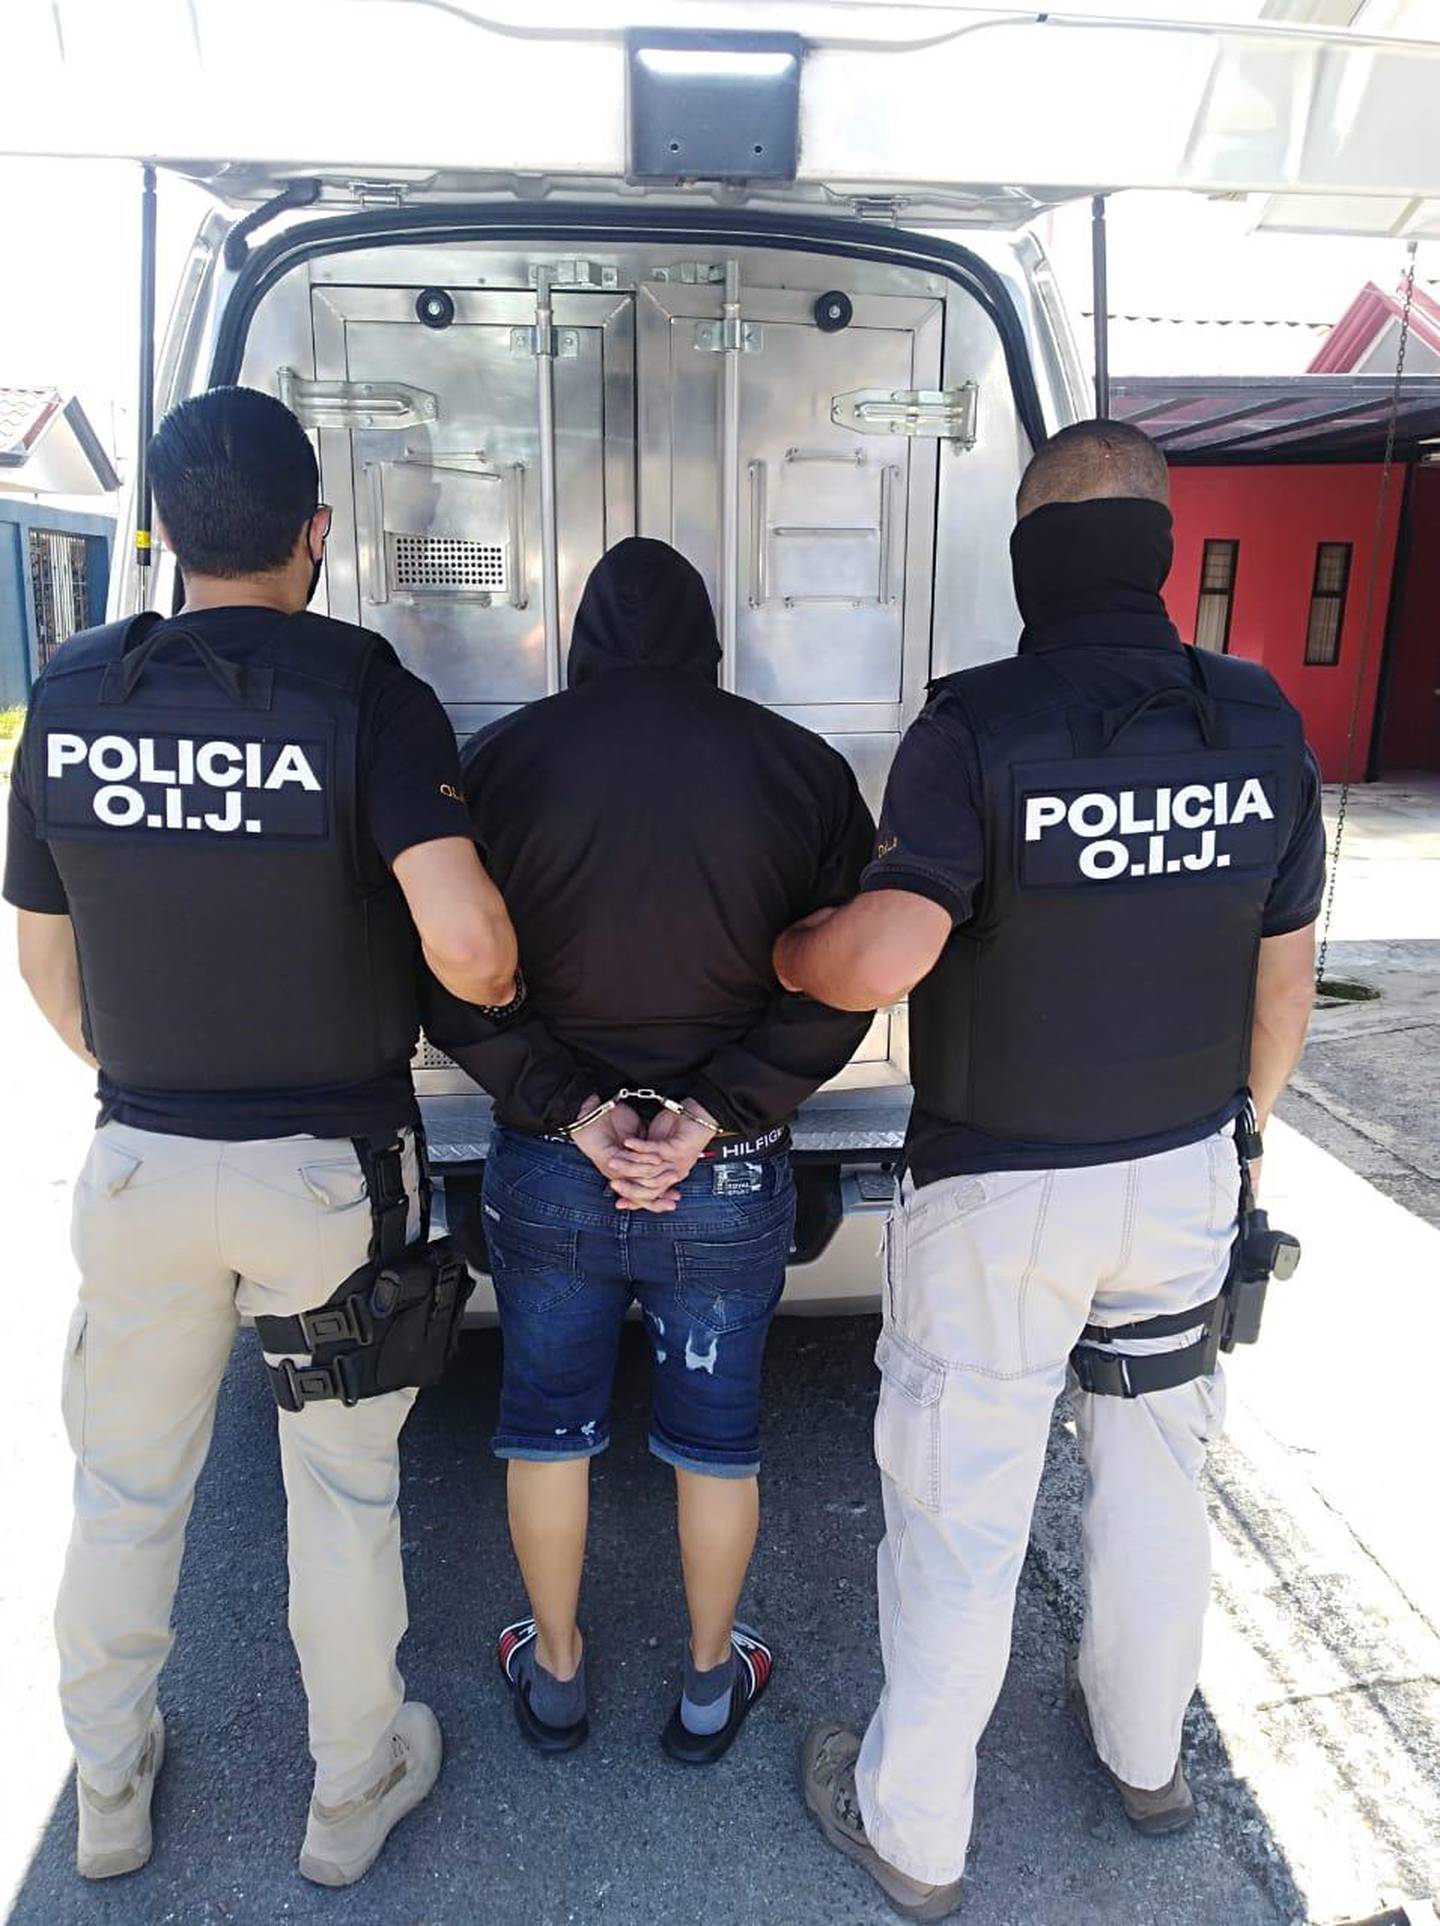 Detienen en Cartago a sujeto de apellido Gómez sospechoso de varios delitos. Foto OIJ.